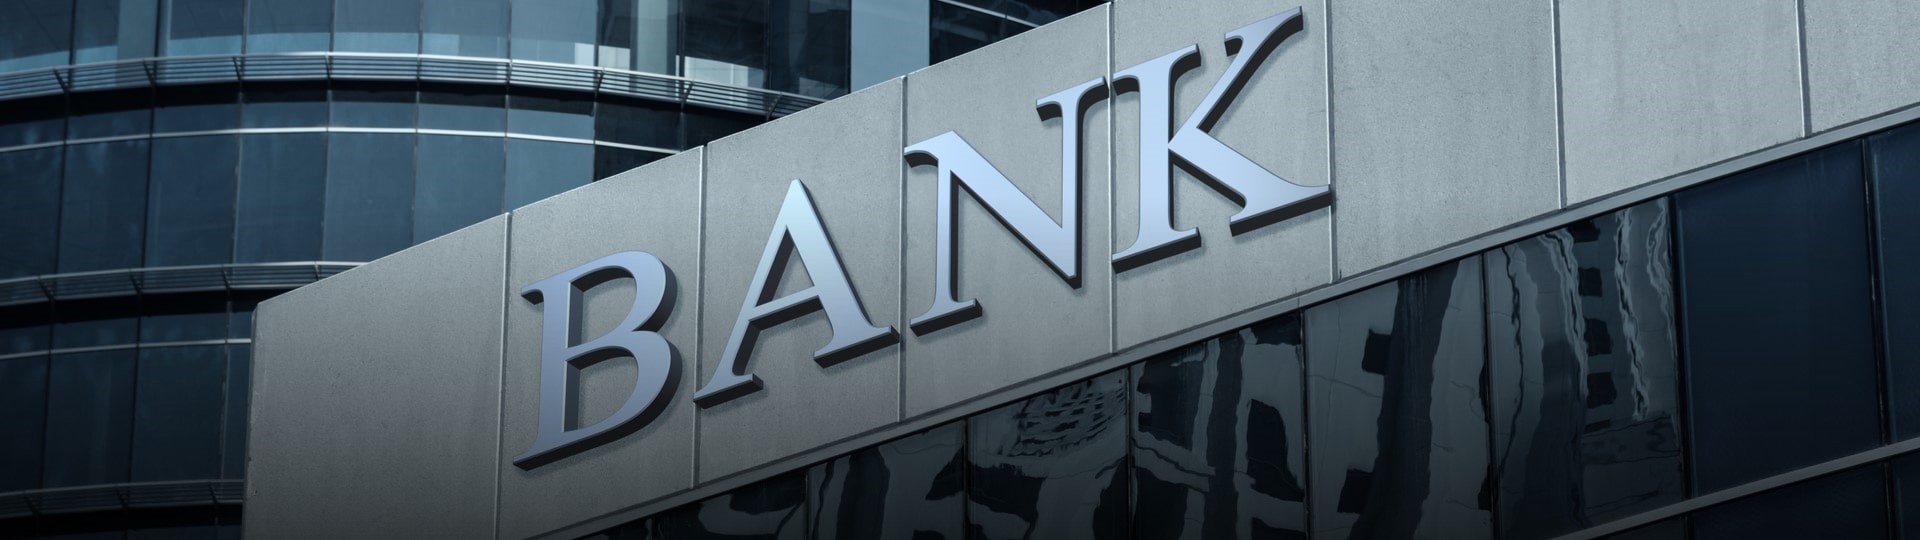 Bank of America zvýšila zisk o 114 procent, Citigroup jej ztrojnásobila